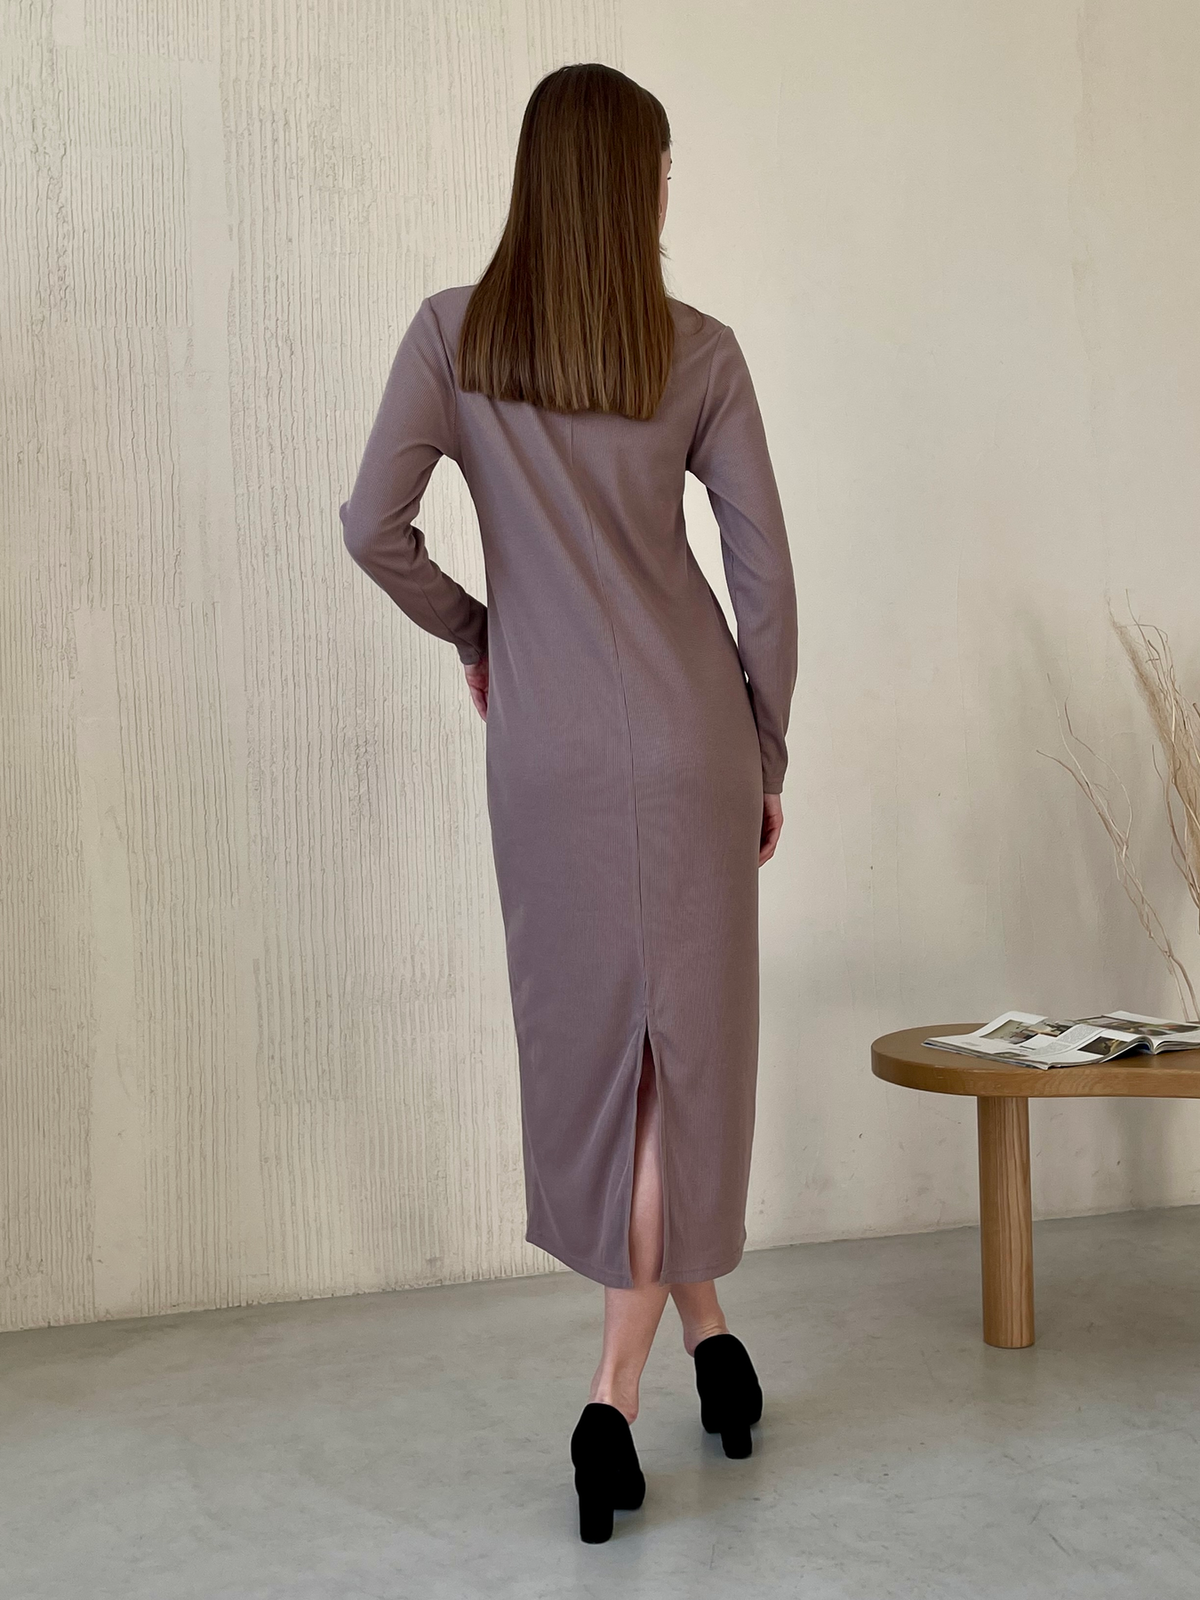 Купити Довга бежева сукня з довгим рукавом Merlini Венето 700001144, розмір 42-44 (S-M) в інтернет-магазині